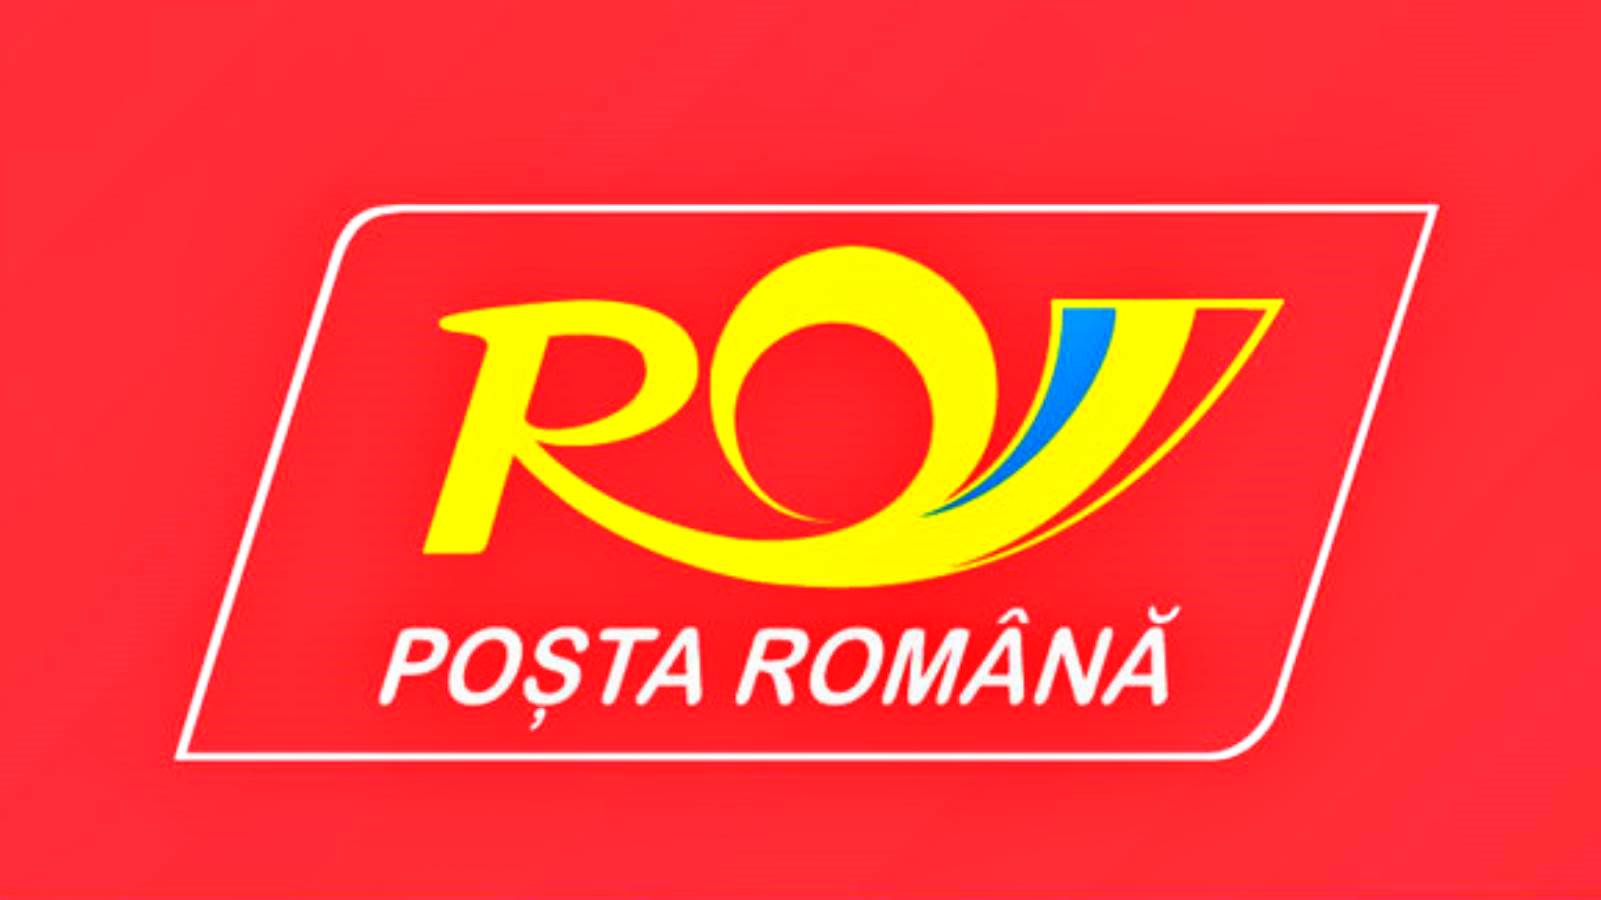 Het besluit van de Roemeense Post werd aan MILJOENEN Roemenen bekendgemaakt